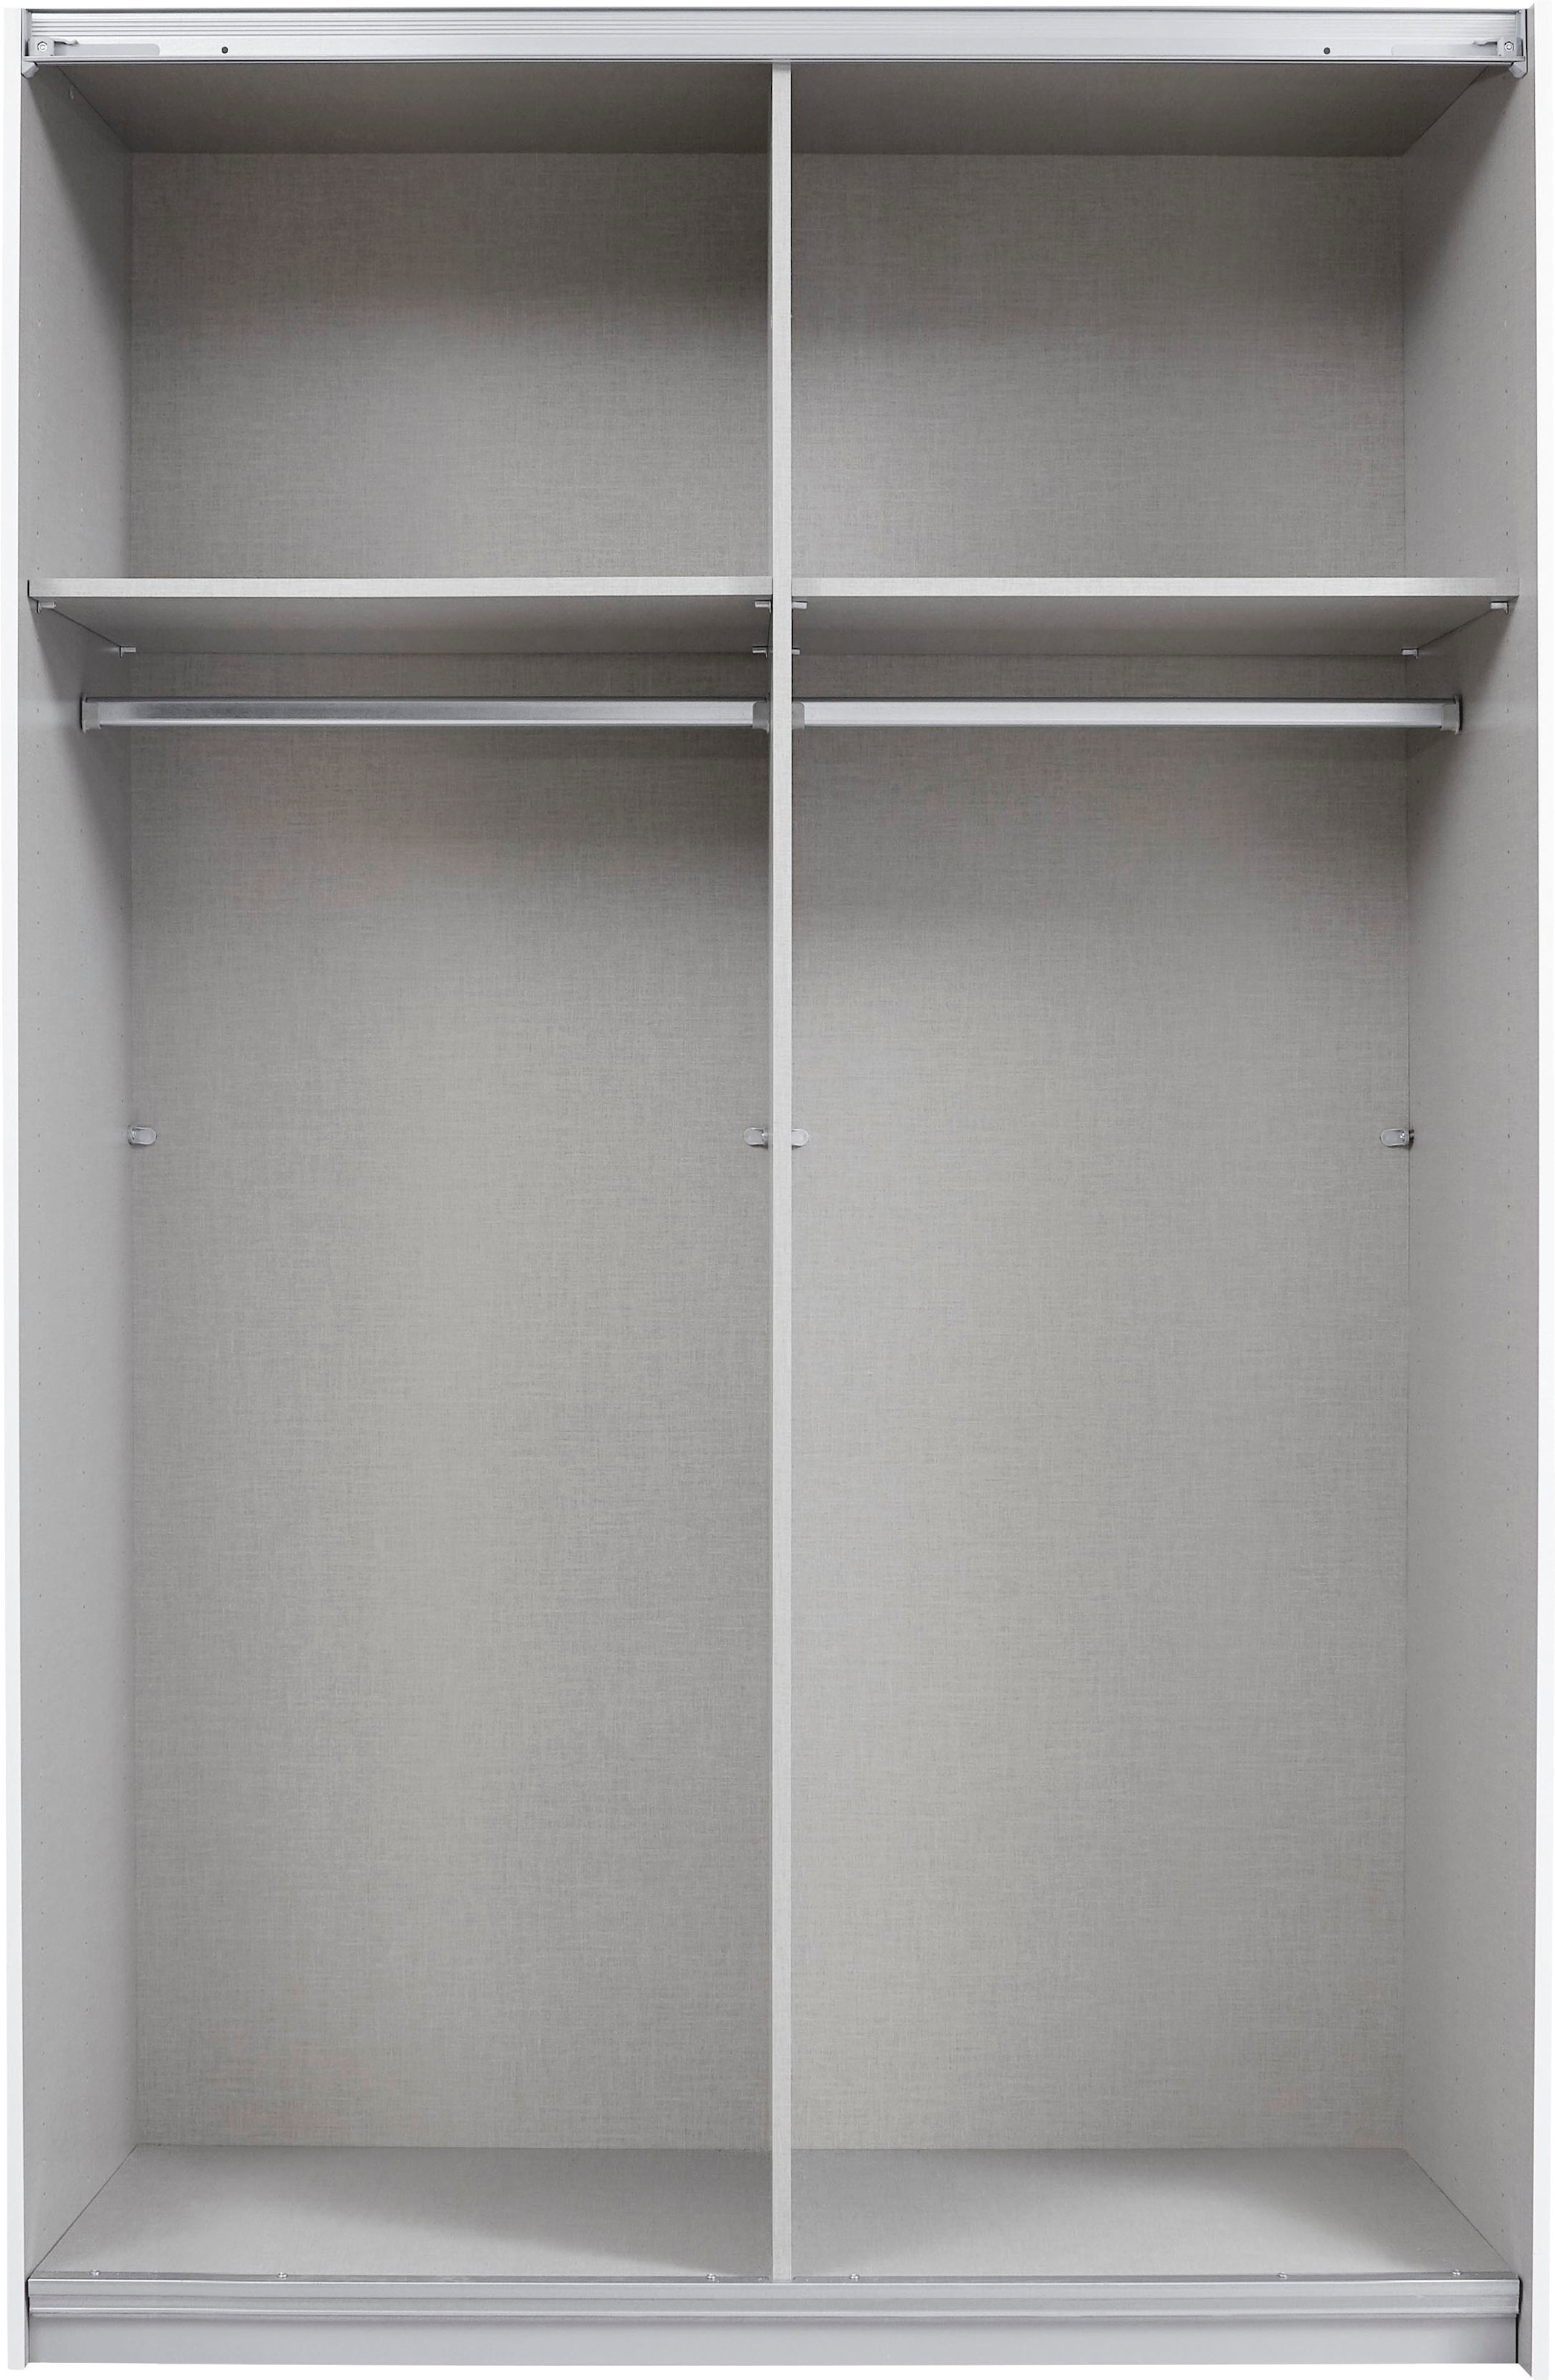 rauch Schwebetürenschrank »Quadra Kleiderschrank BESTSELLER Schrank Gaderobe«, mit Möglichkeit zur individuellen Frontgestaltung, leichtgängige Türen